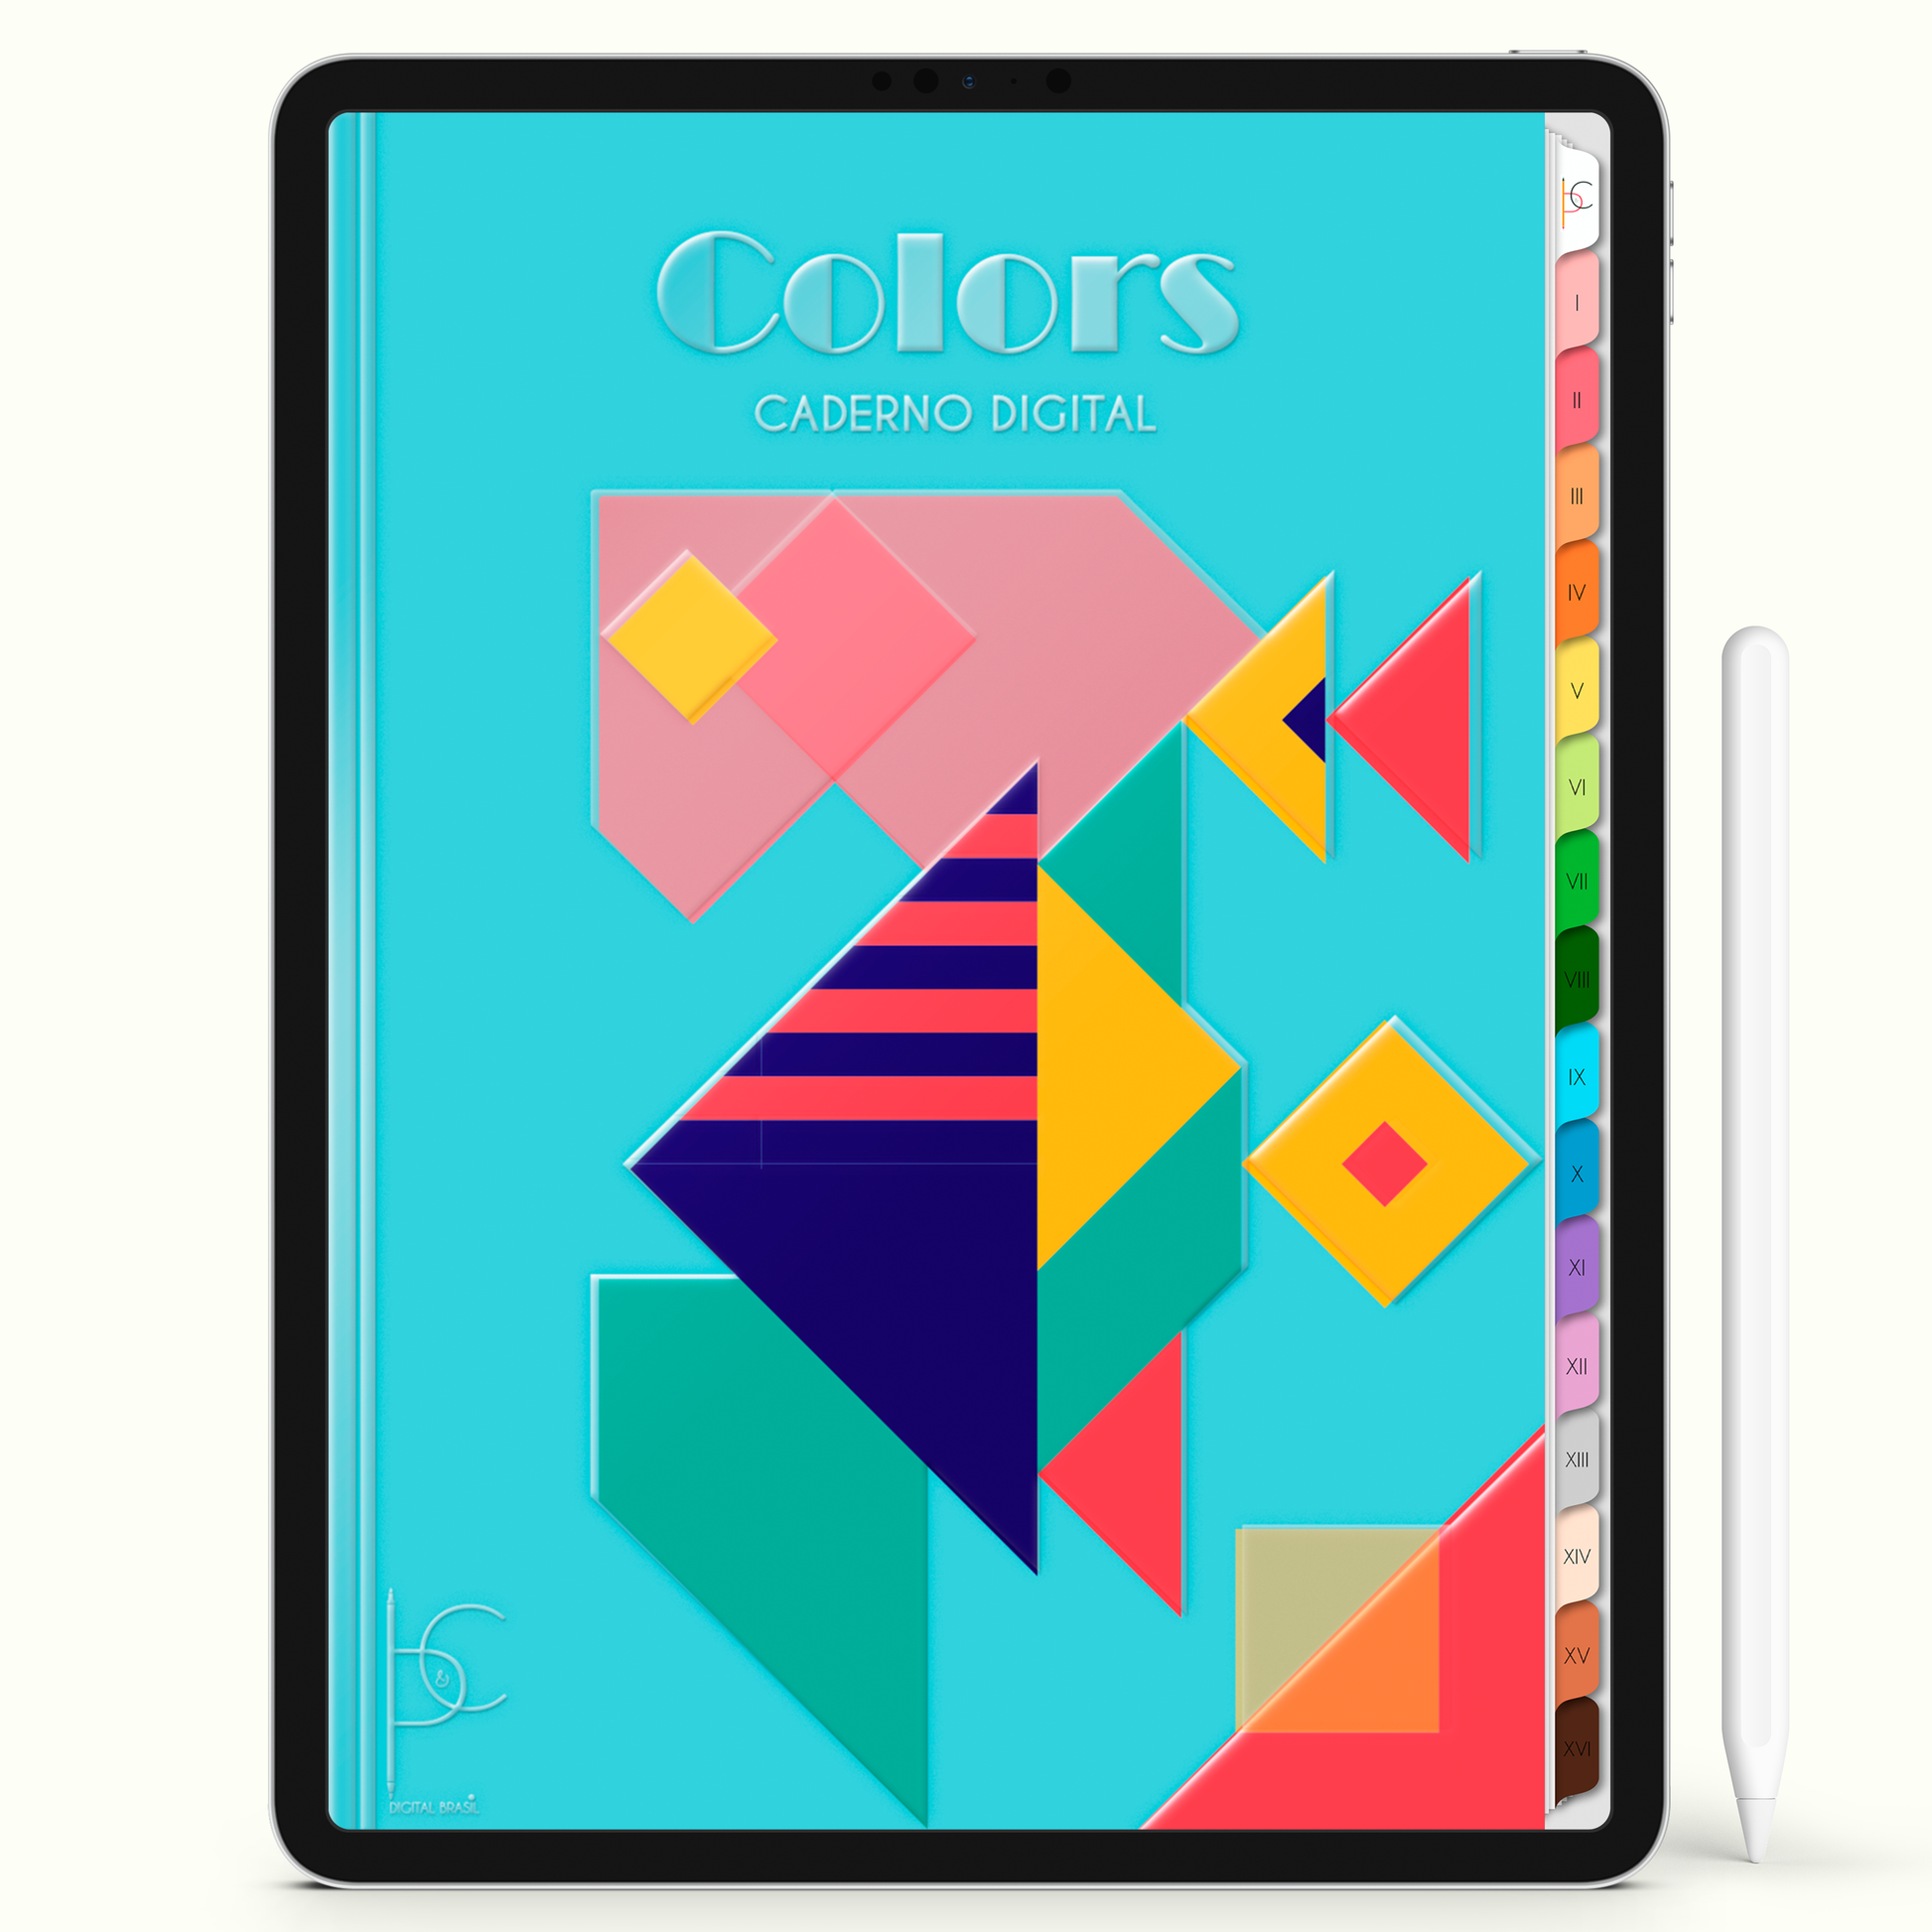 Caderno Digital Colors Geometric Study 16 Matérias • Para iPad e Tablet Android • Download instantâneo • Sustentável